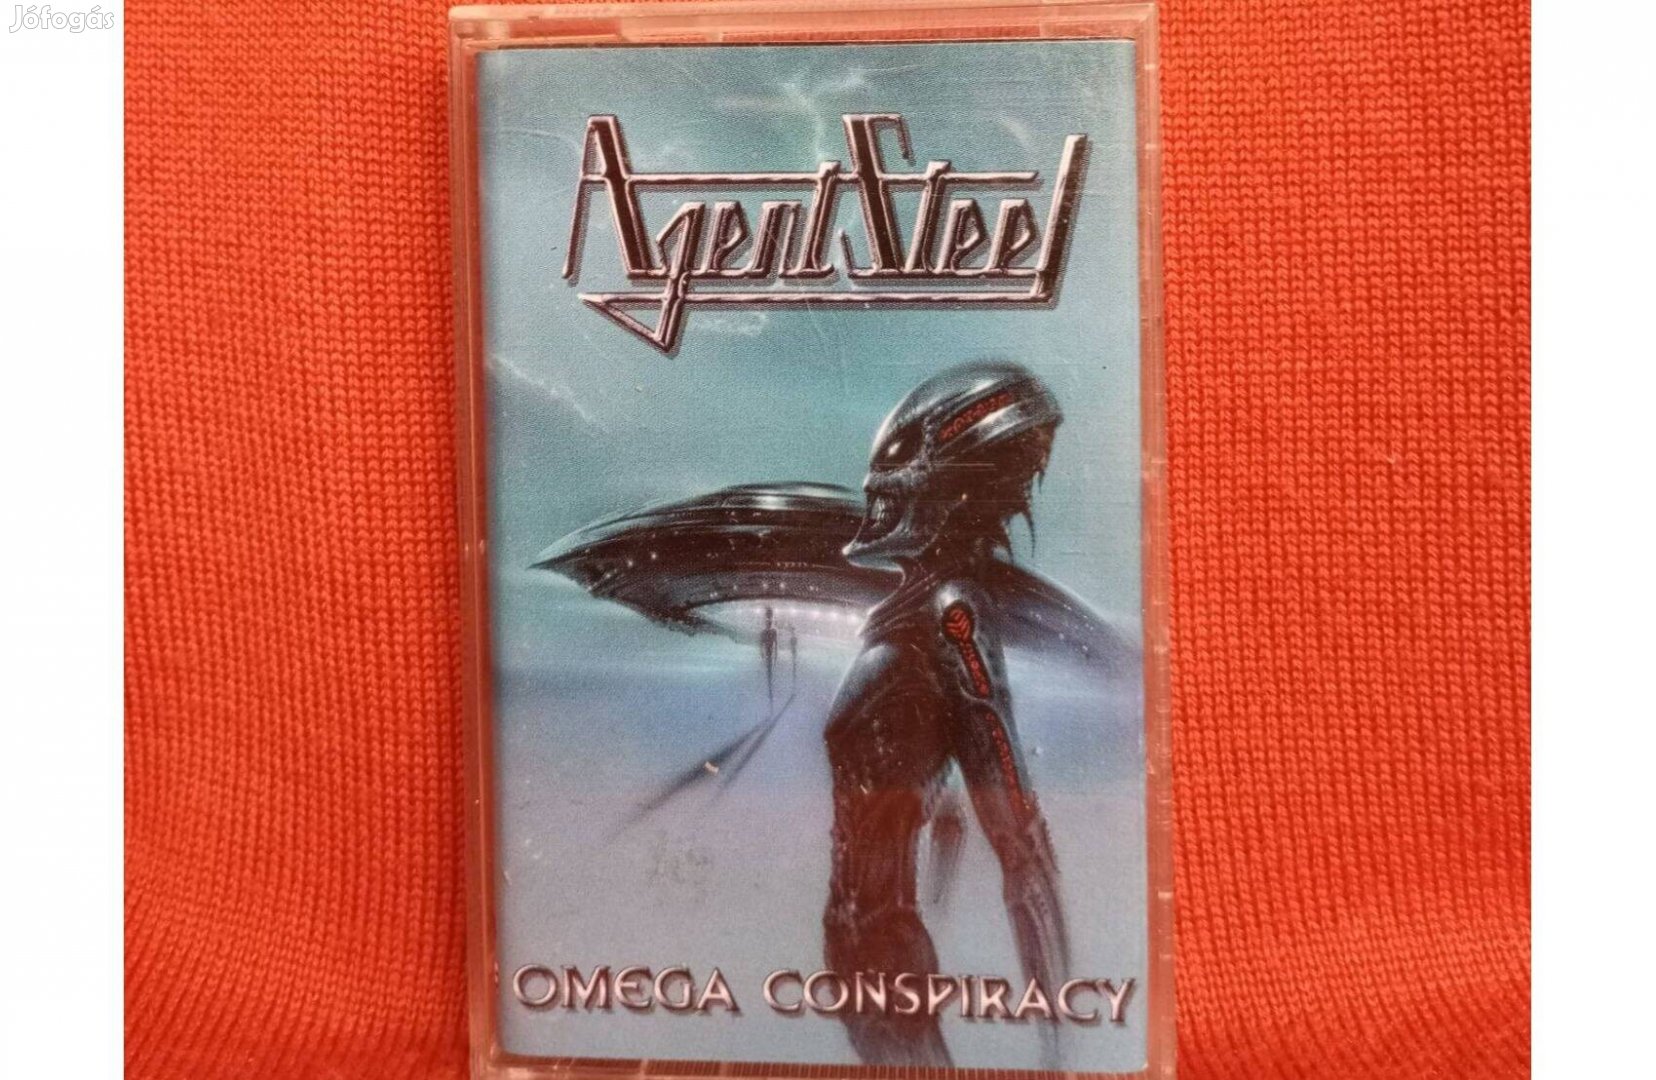 Agent Steel - Omega Conspiracy Mk. /új fólia nélkül/